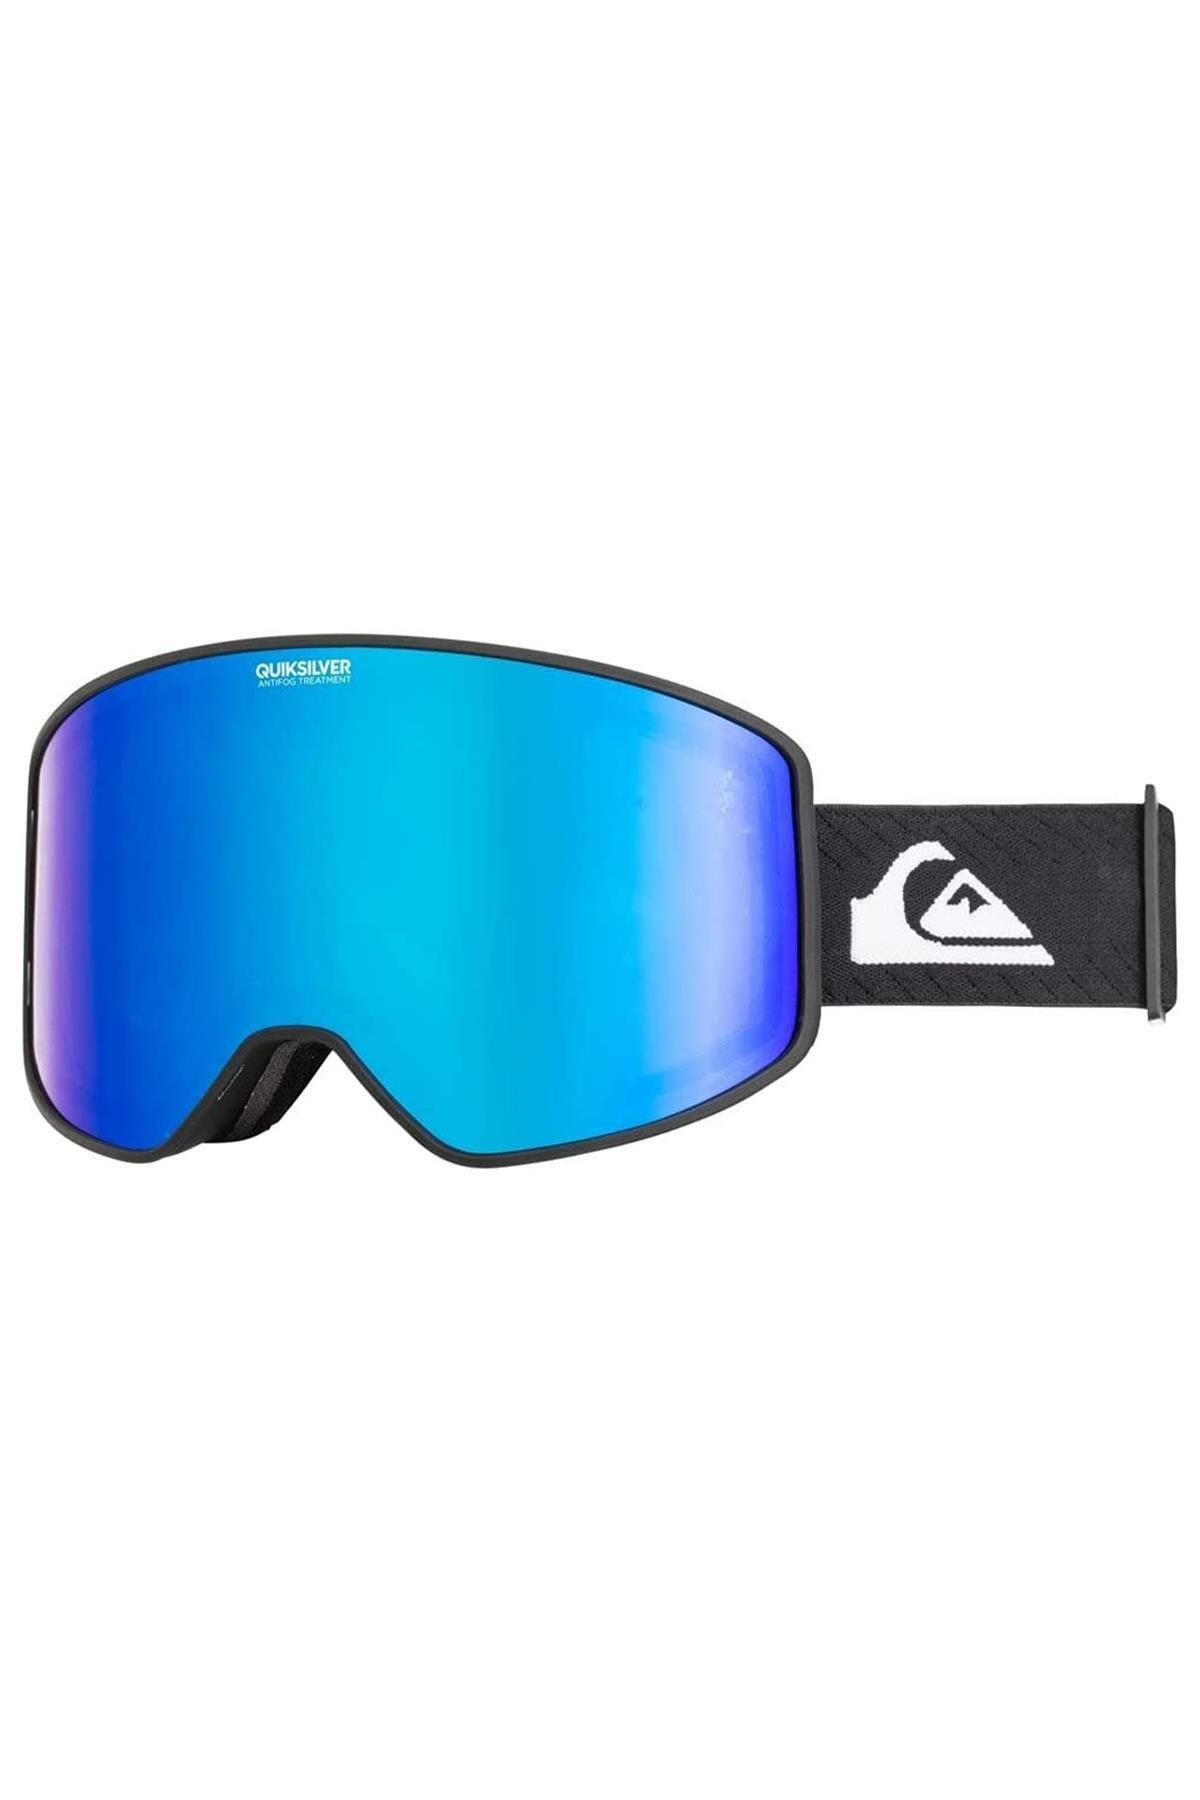 Quiksilver Storm Goggle Erkek Kayak Gözlüğü-eqytg03143dcd